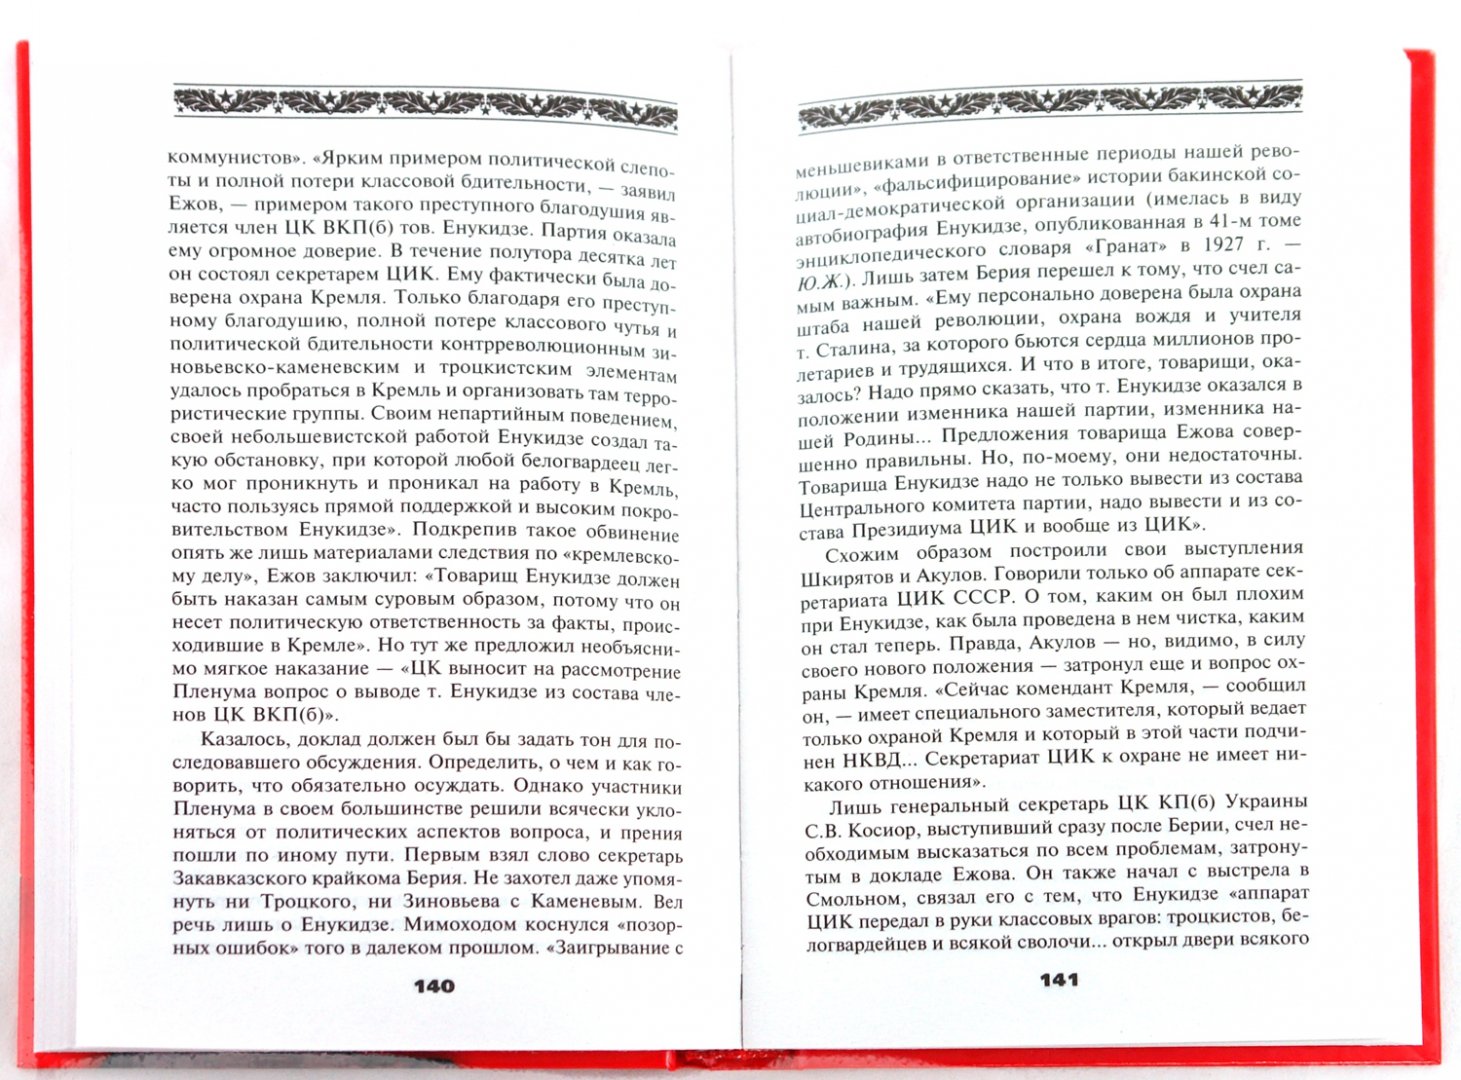 Иллюстрация 1 из 43 для Настольная книга сталиниста - Юрий Жуков | Лабиринт - книги. Источник: Лабиринт